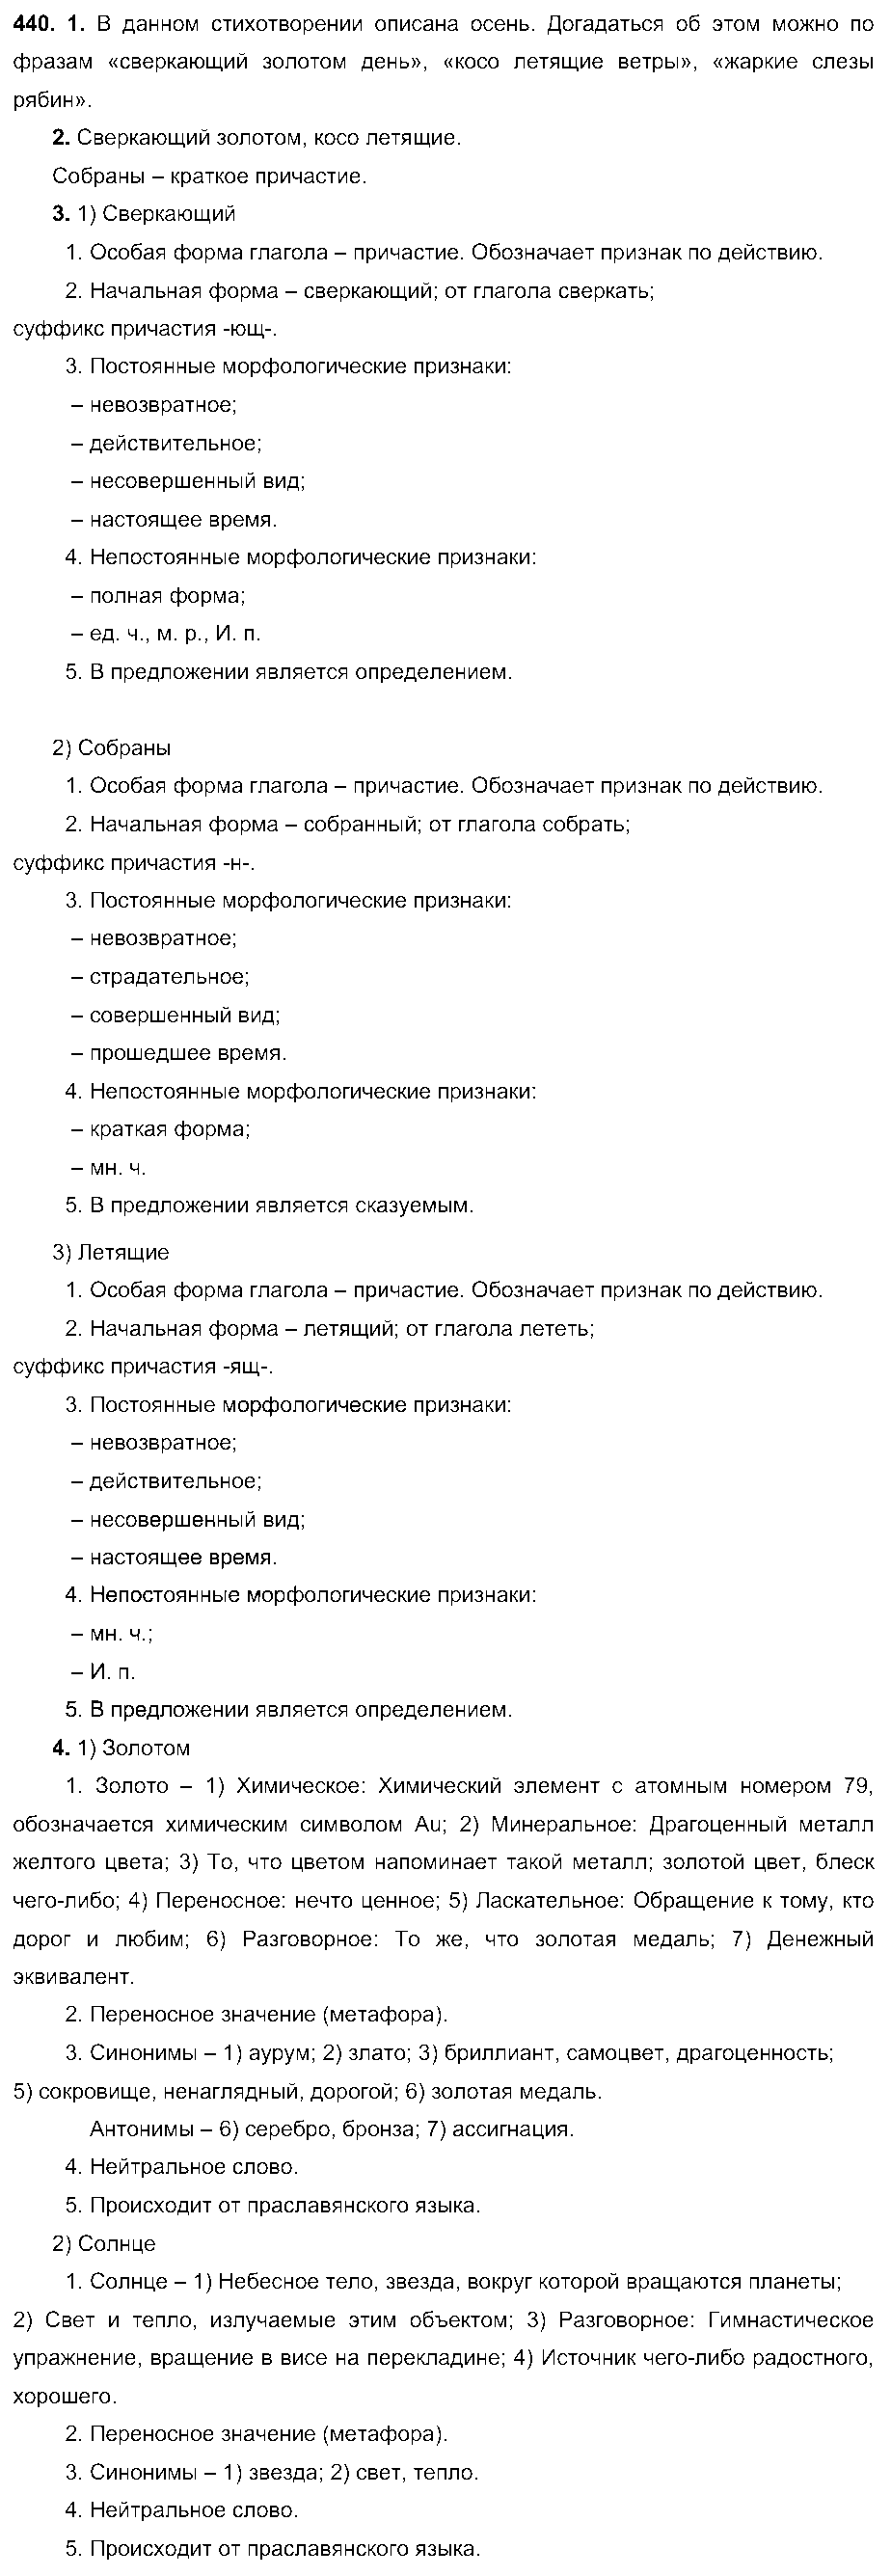 ГДЗ Русский язык 6 класс - 440